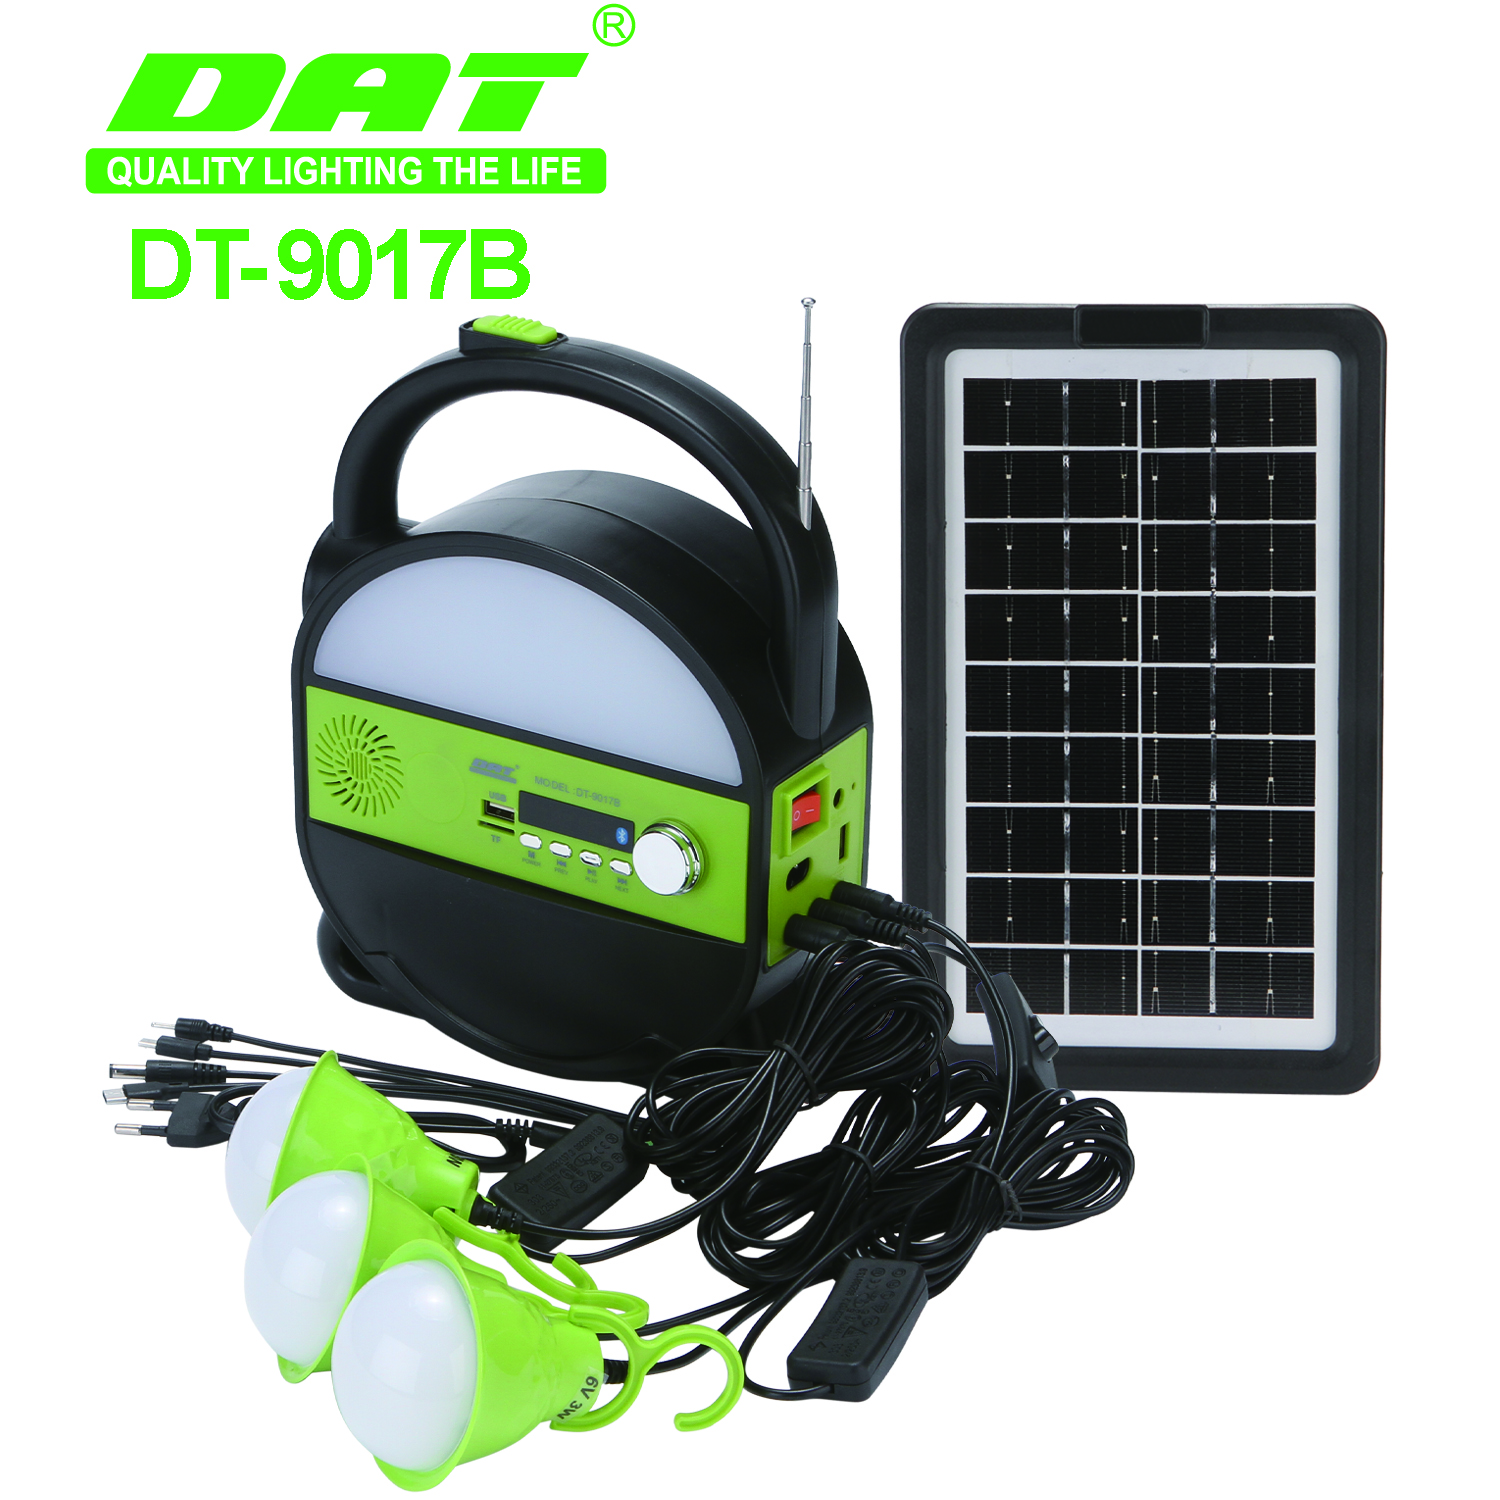 DT-9017B太阳能照明小系统户外照明灯野营灯带蓝牙MP3收音机功能可应急充电详情图1